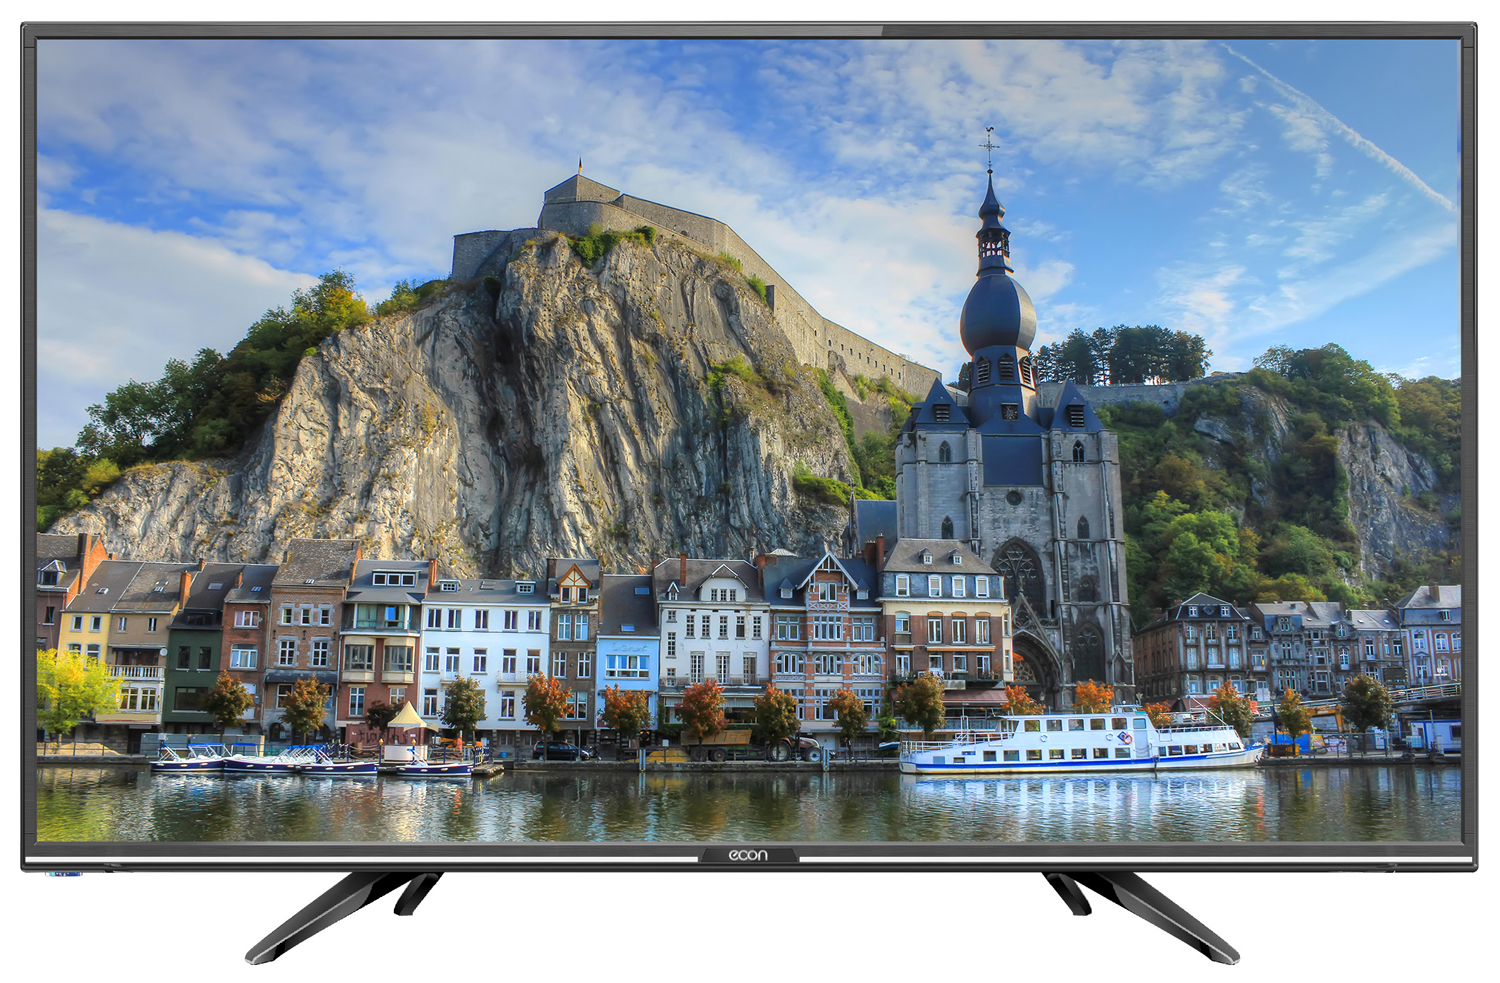 Картинка Телевизор ECON EX-24HT004B по разумной цене купить в интернет магазине mall.su